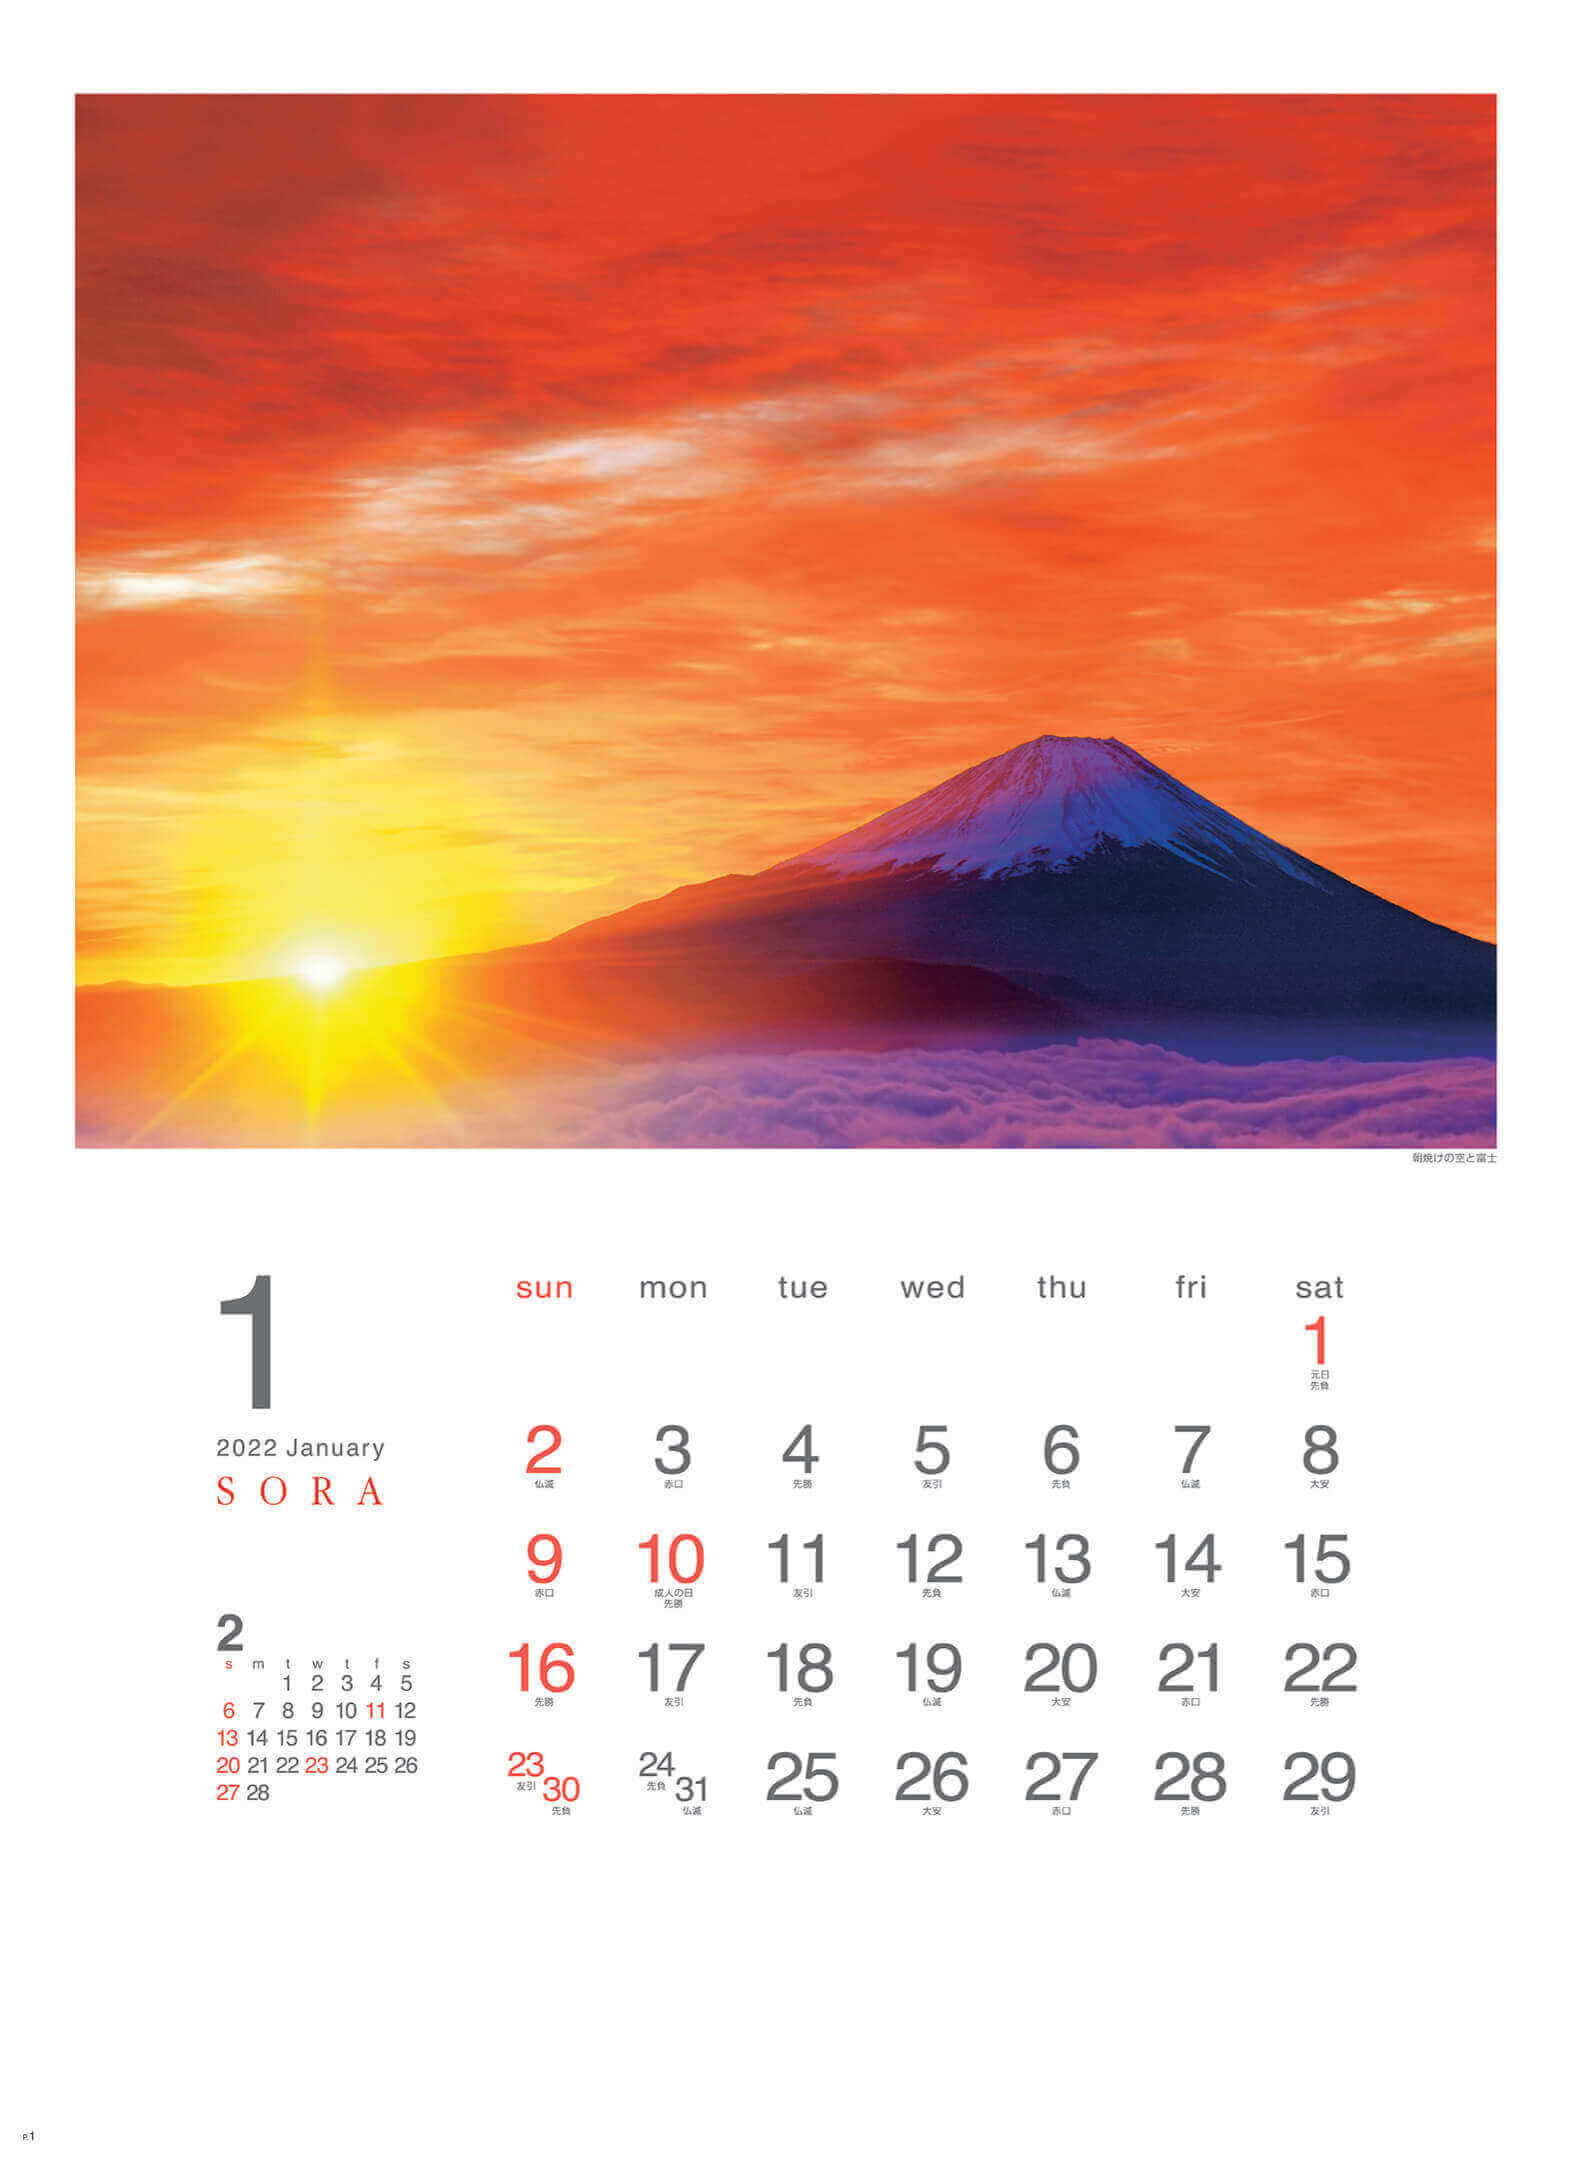 1月 朝焼けの空と富士 SORA -空- 2022年カレンダーの画像